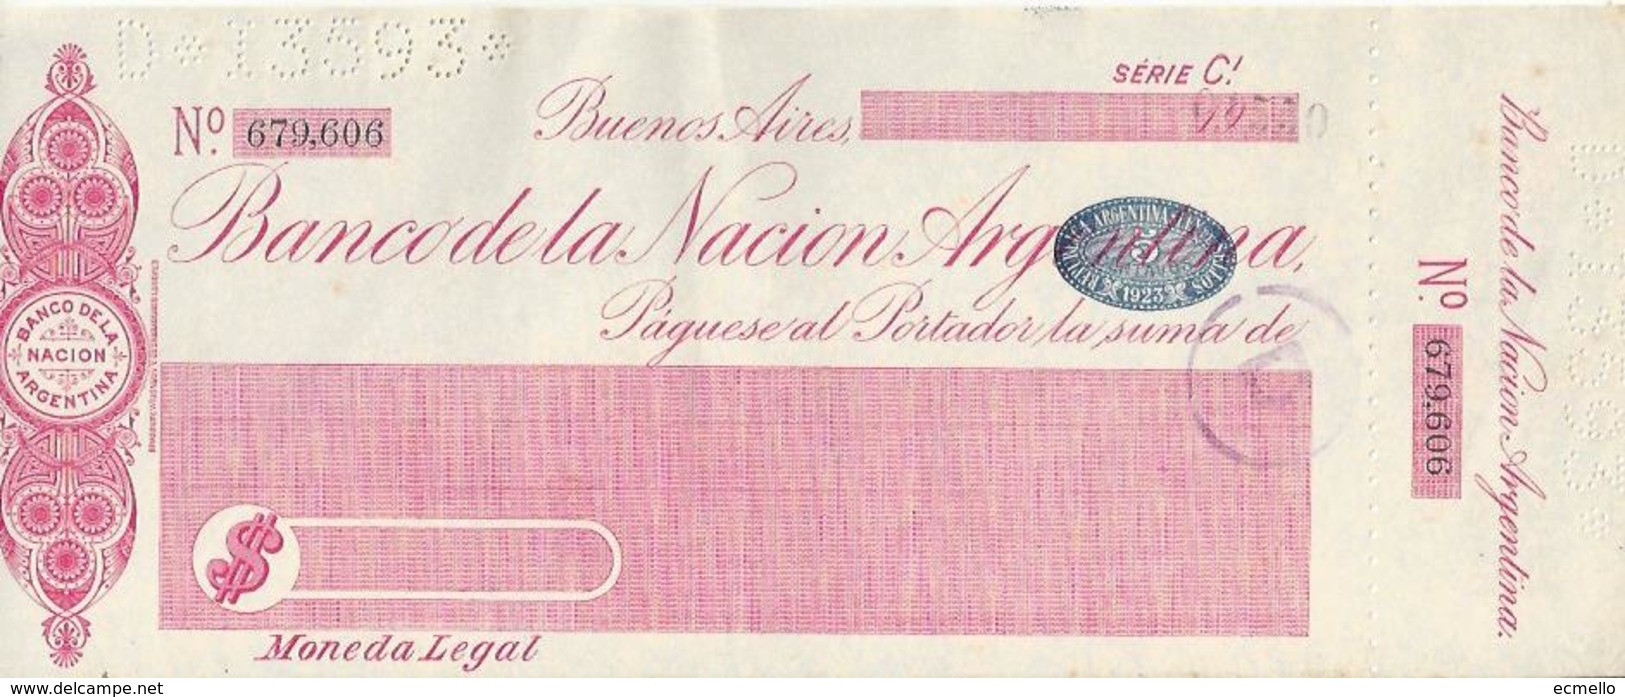 ARGENTINA  CHECK CHEQUE BANCO DE LA NACION 1923 REVENUE LARGE - Chèques & Chèques De Voyage